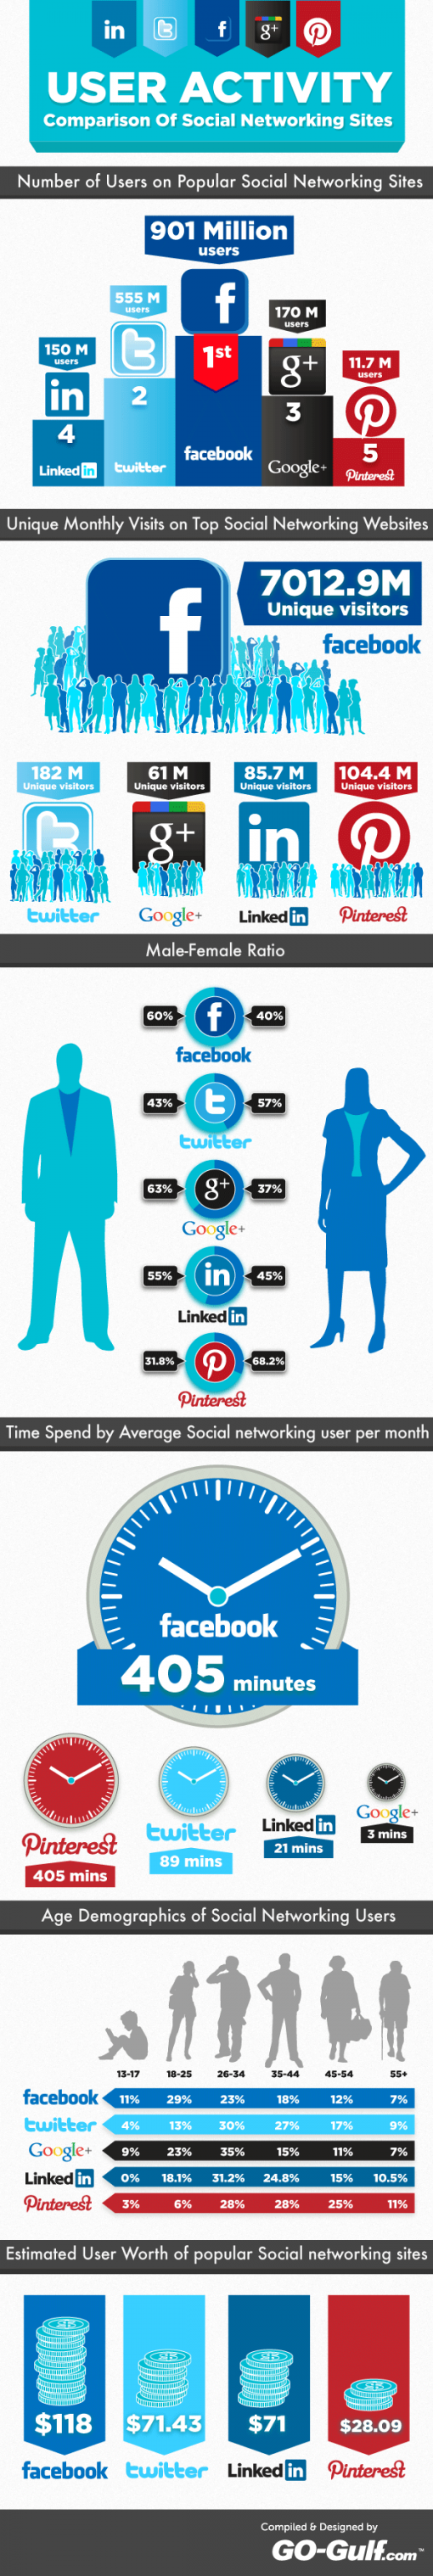 social-netwerk-gebruikers-infographic